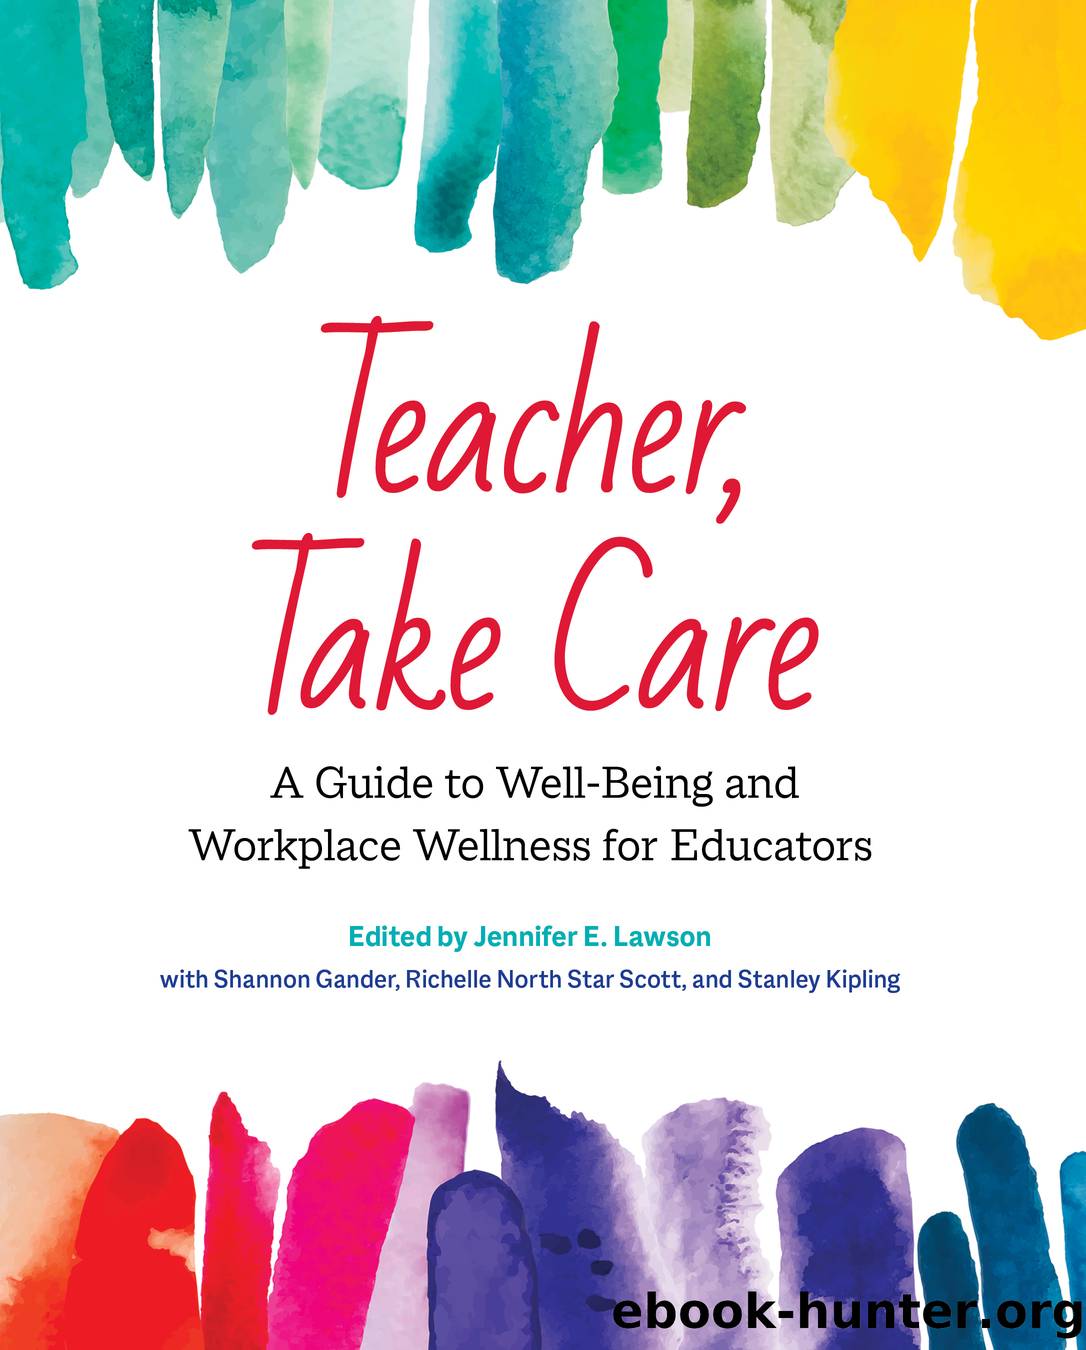 Teacher, Take Care by Jennifer E. Lawson